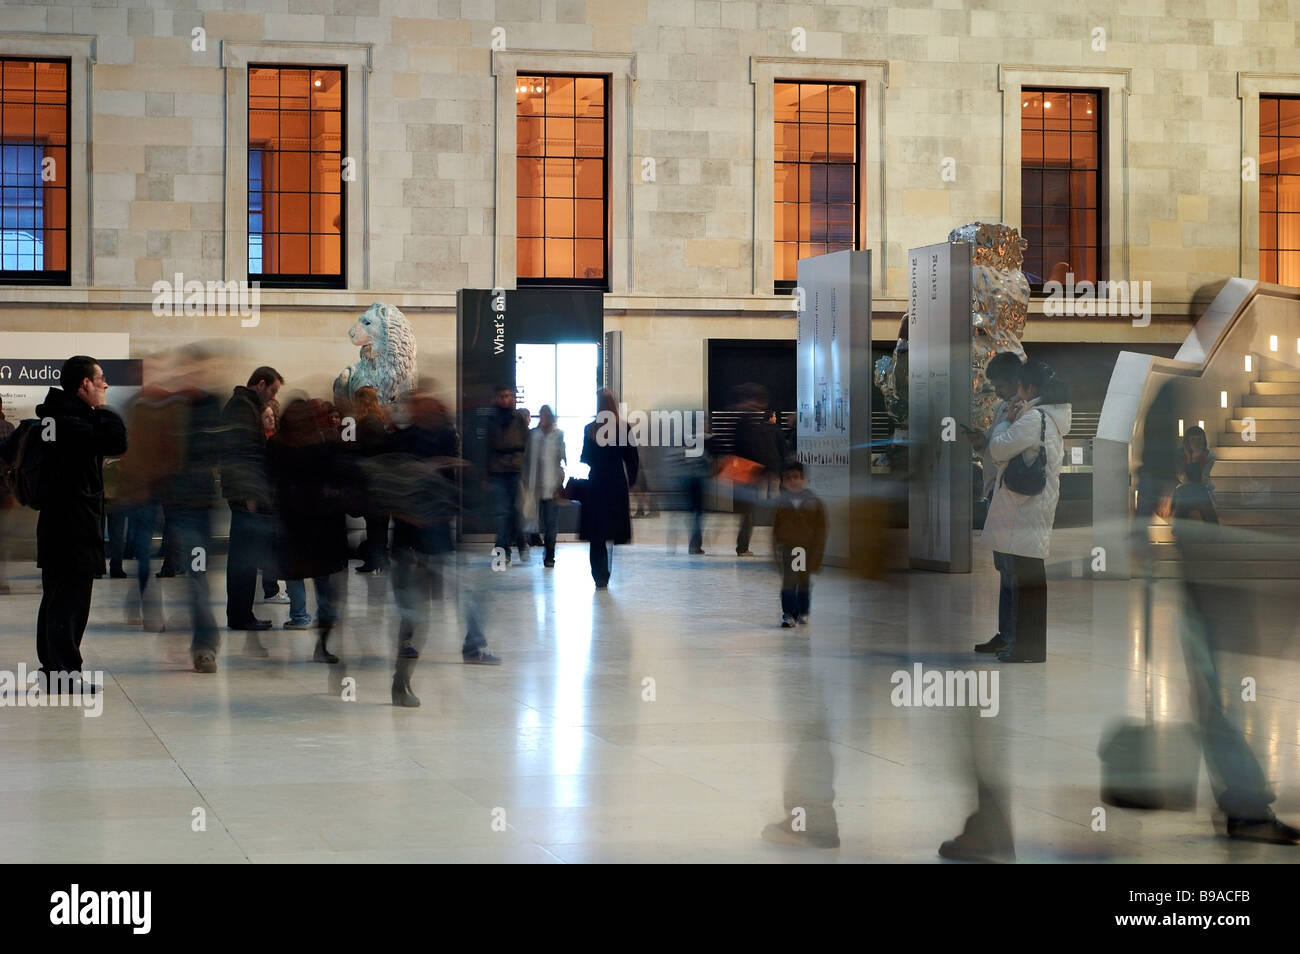 Das British Museum, London. Innenausbau von "The Great Court" (Time-Lapse-Image zeigt den Besuchern wie gespenstische Figuren). Stockfoto